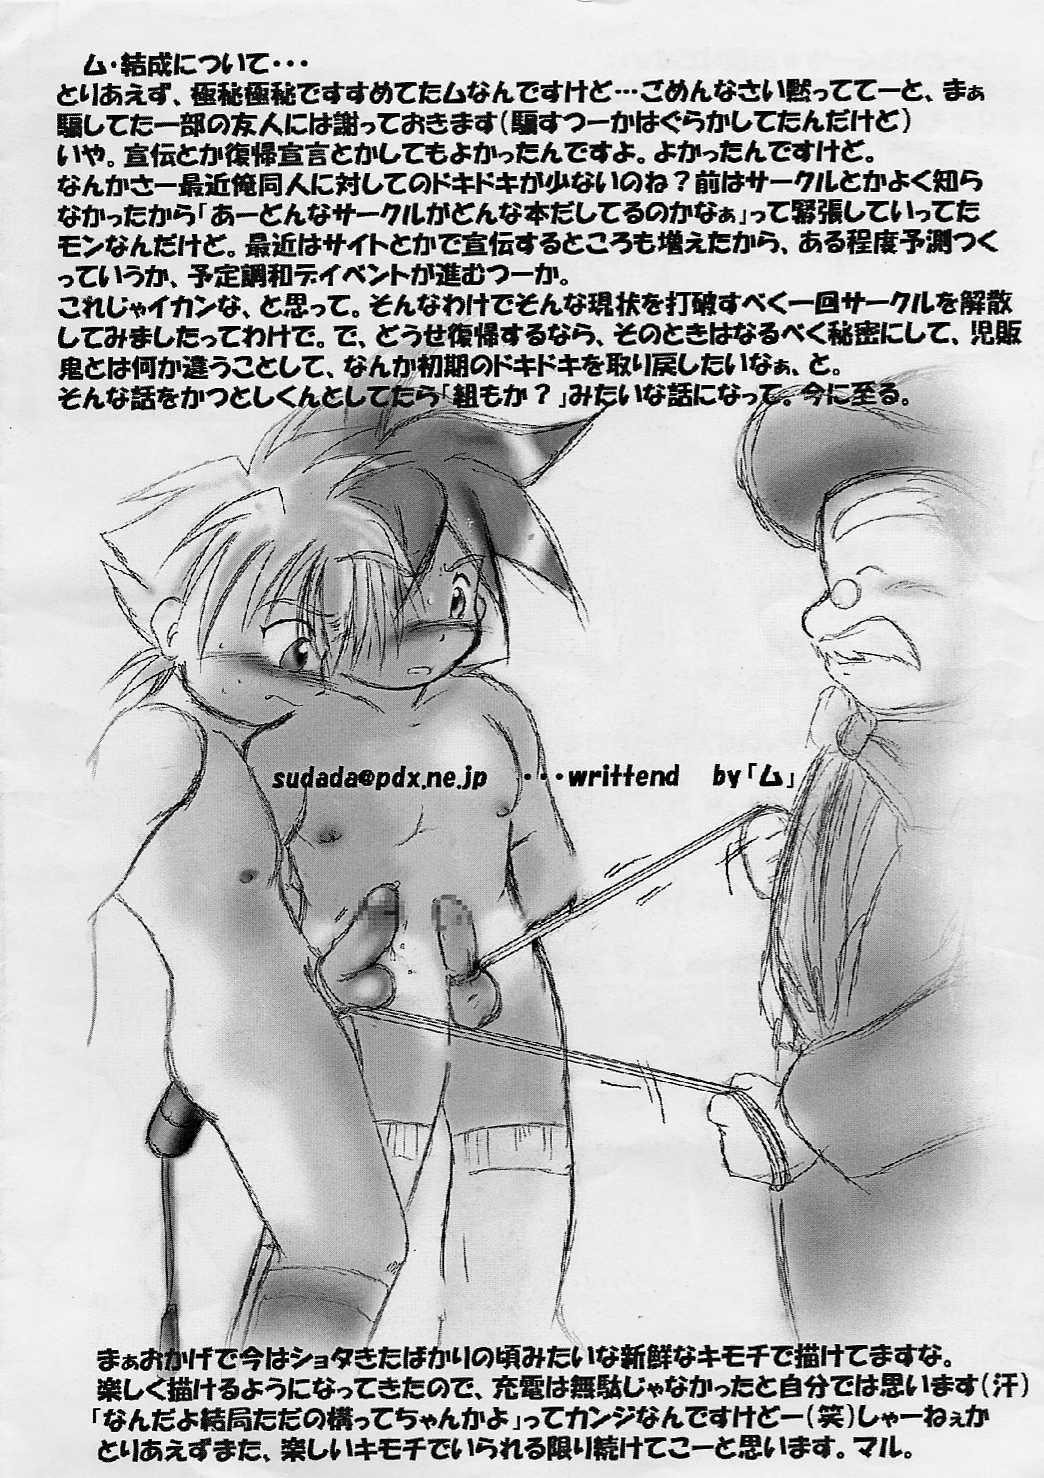 Lez Hardcore Shotakatsu VOL 1 - Naruto Hunter x hunter Bakusou kyoudai lets and go Rurouni kenshin | samurai x Webcamchat - Page 24